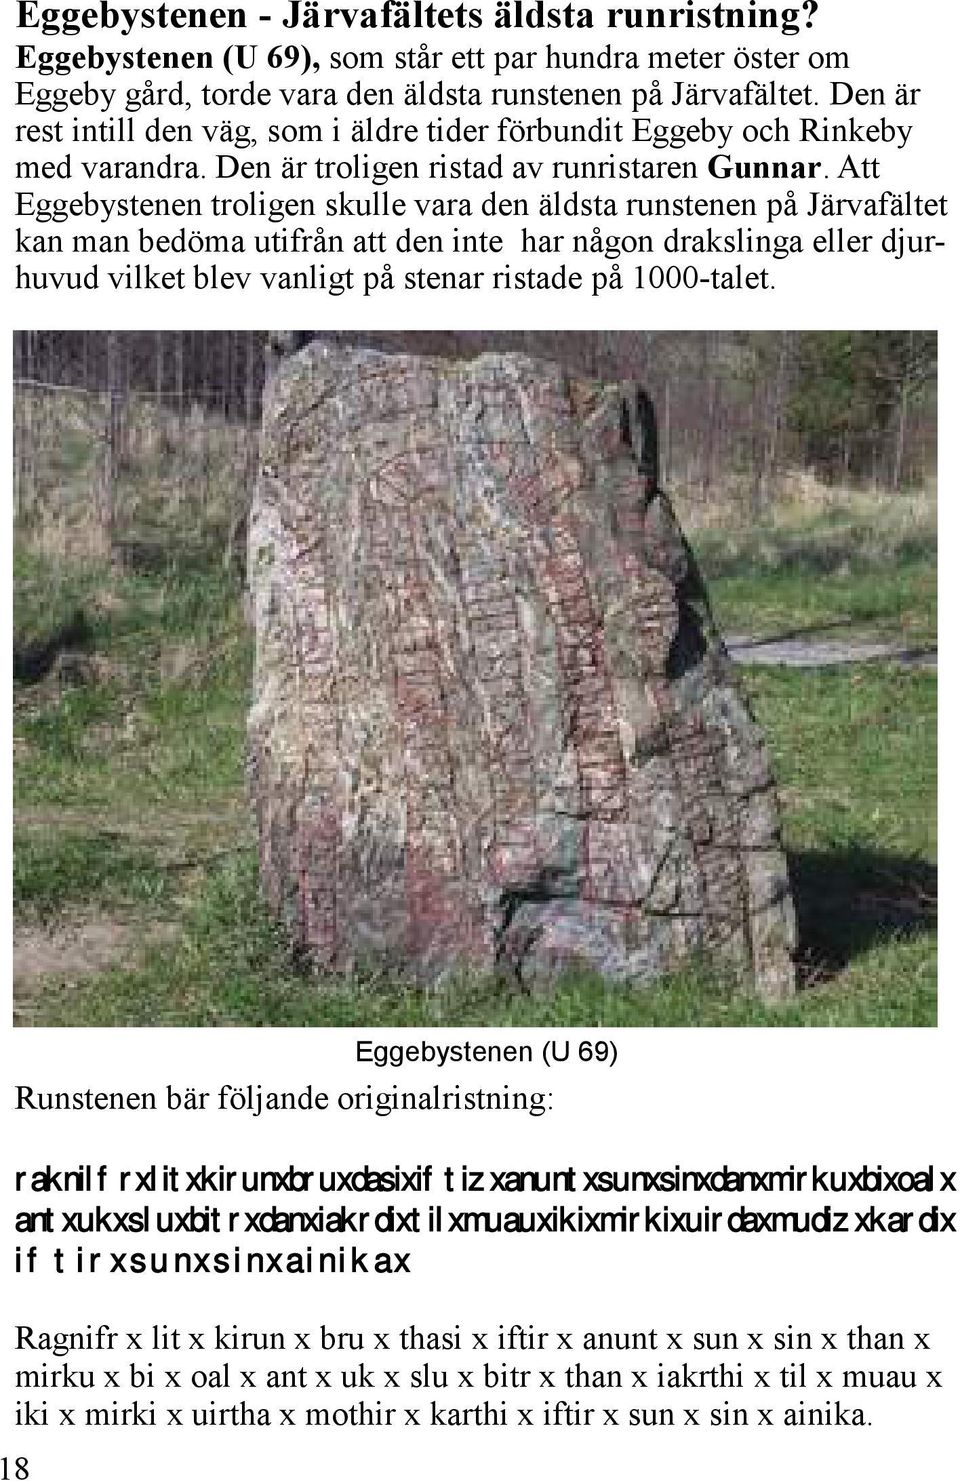 Att Eggebystenen troligen skulle vara den äldsta runstenen på Järvafältet kan man bedöma utifrån att den inte har någon drakslinga eller djurhuvud vilket blev vanligt på stenar ristade på 1000-talet.